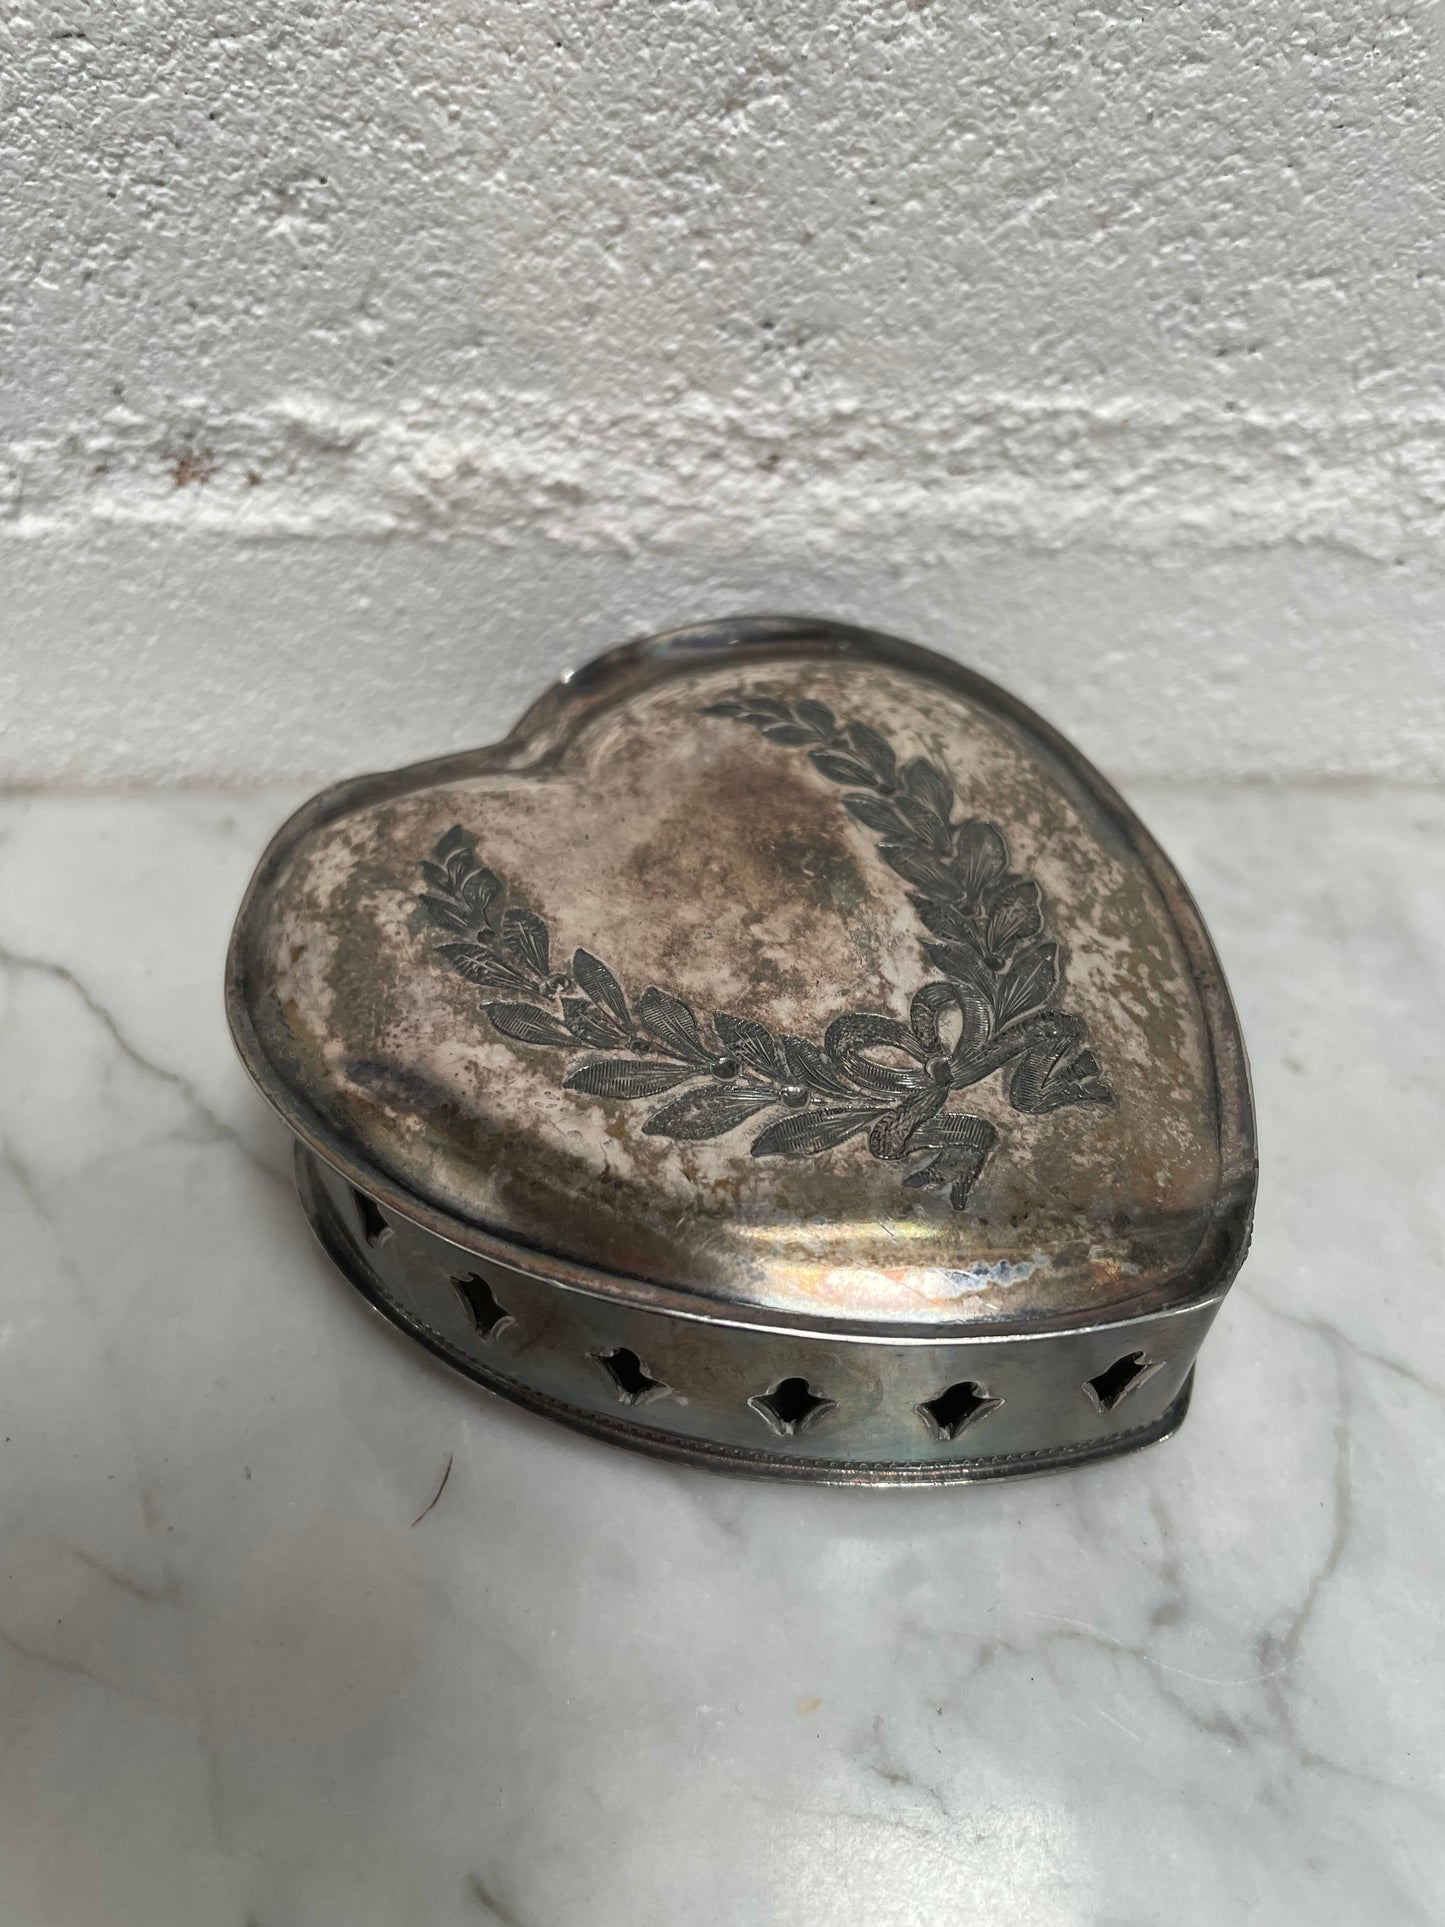 Antique Knicker Bocker Silver Trinket Box